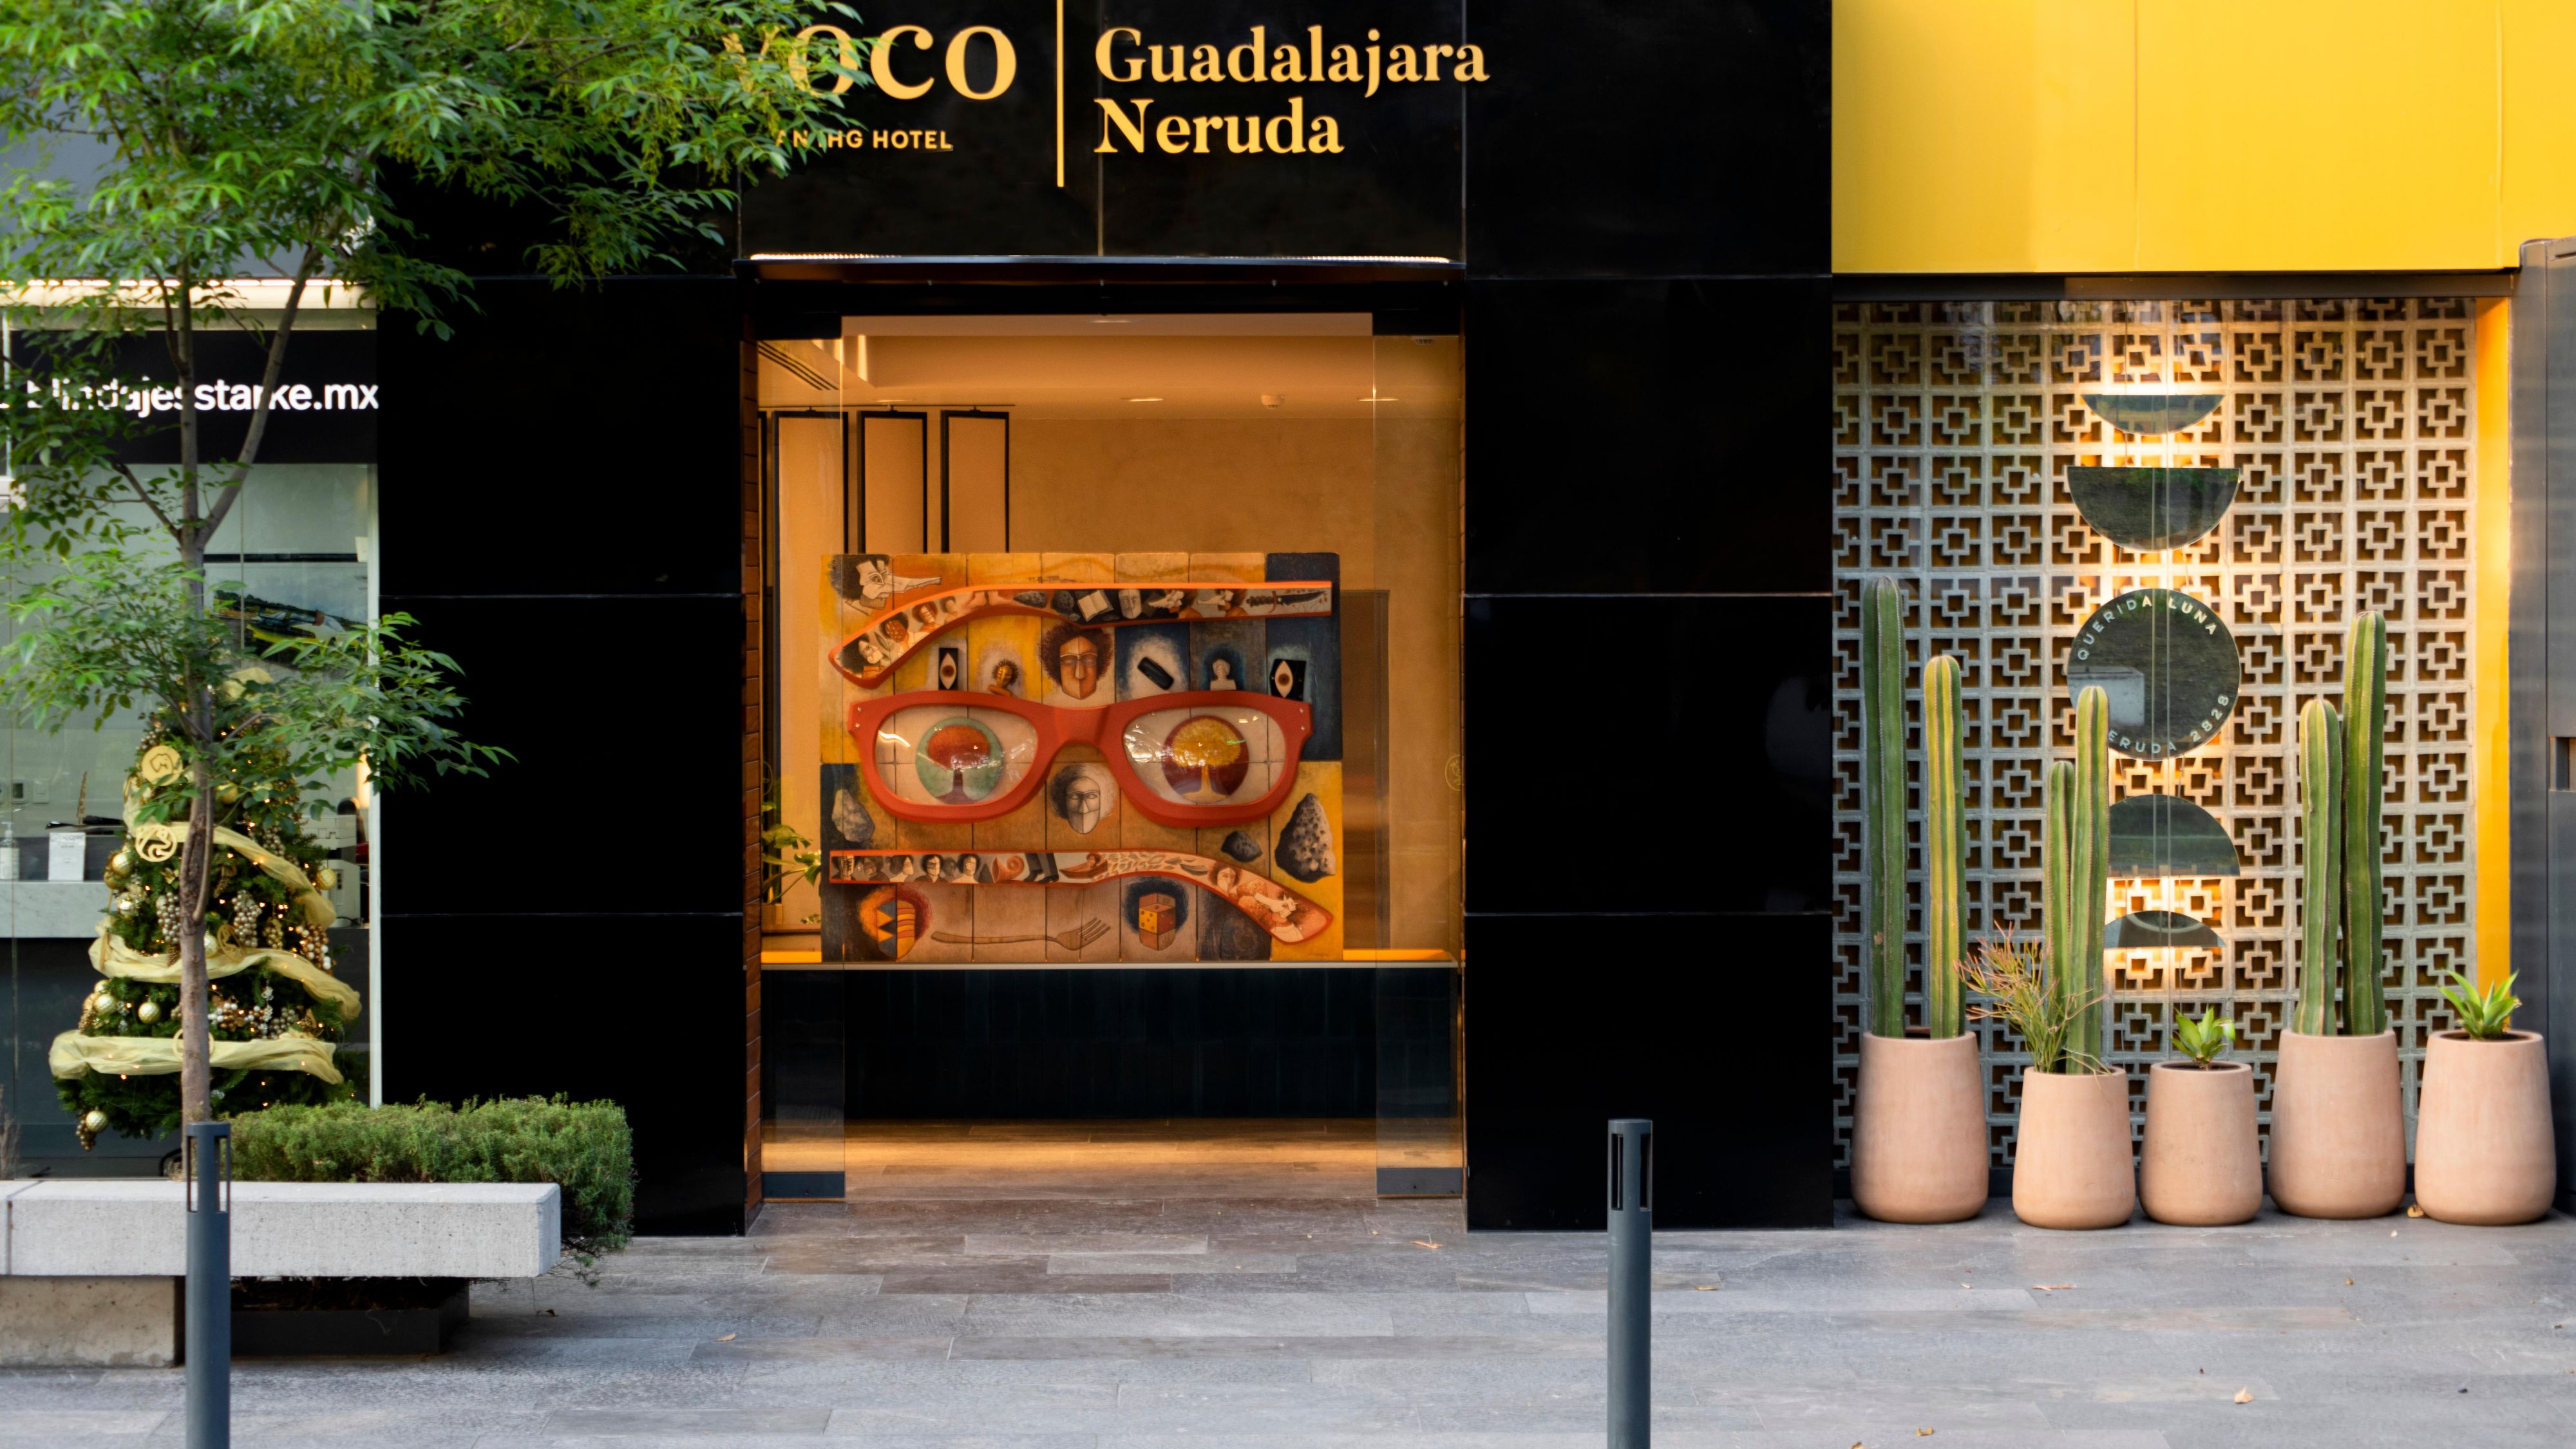 voco Guadalajara Neruda 酒店外观